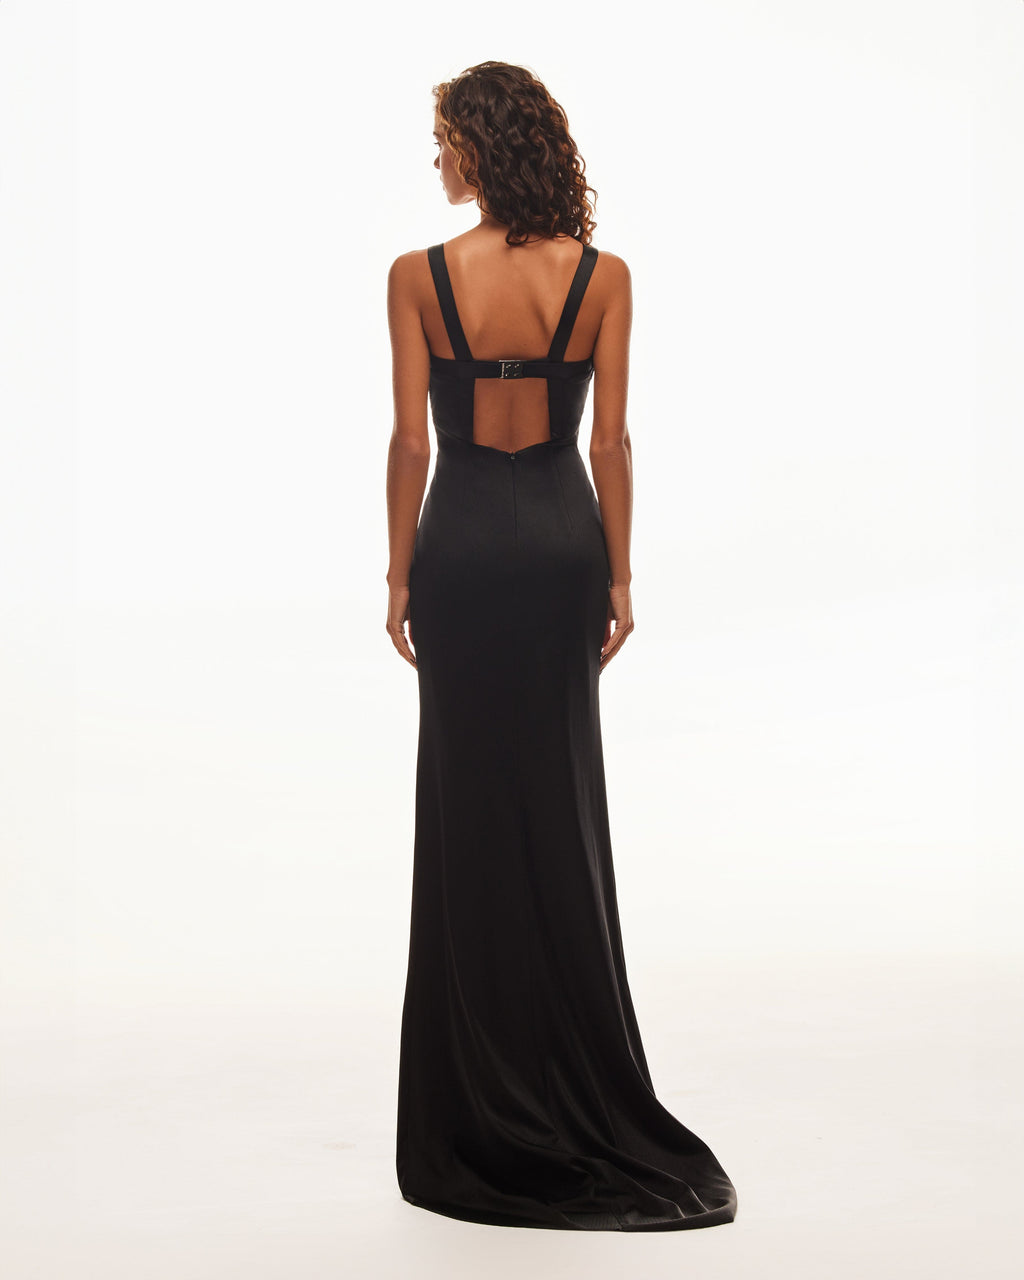 Show-stealer black maxi dress with a V-neckline, Smoky Quartz